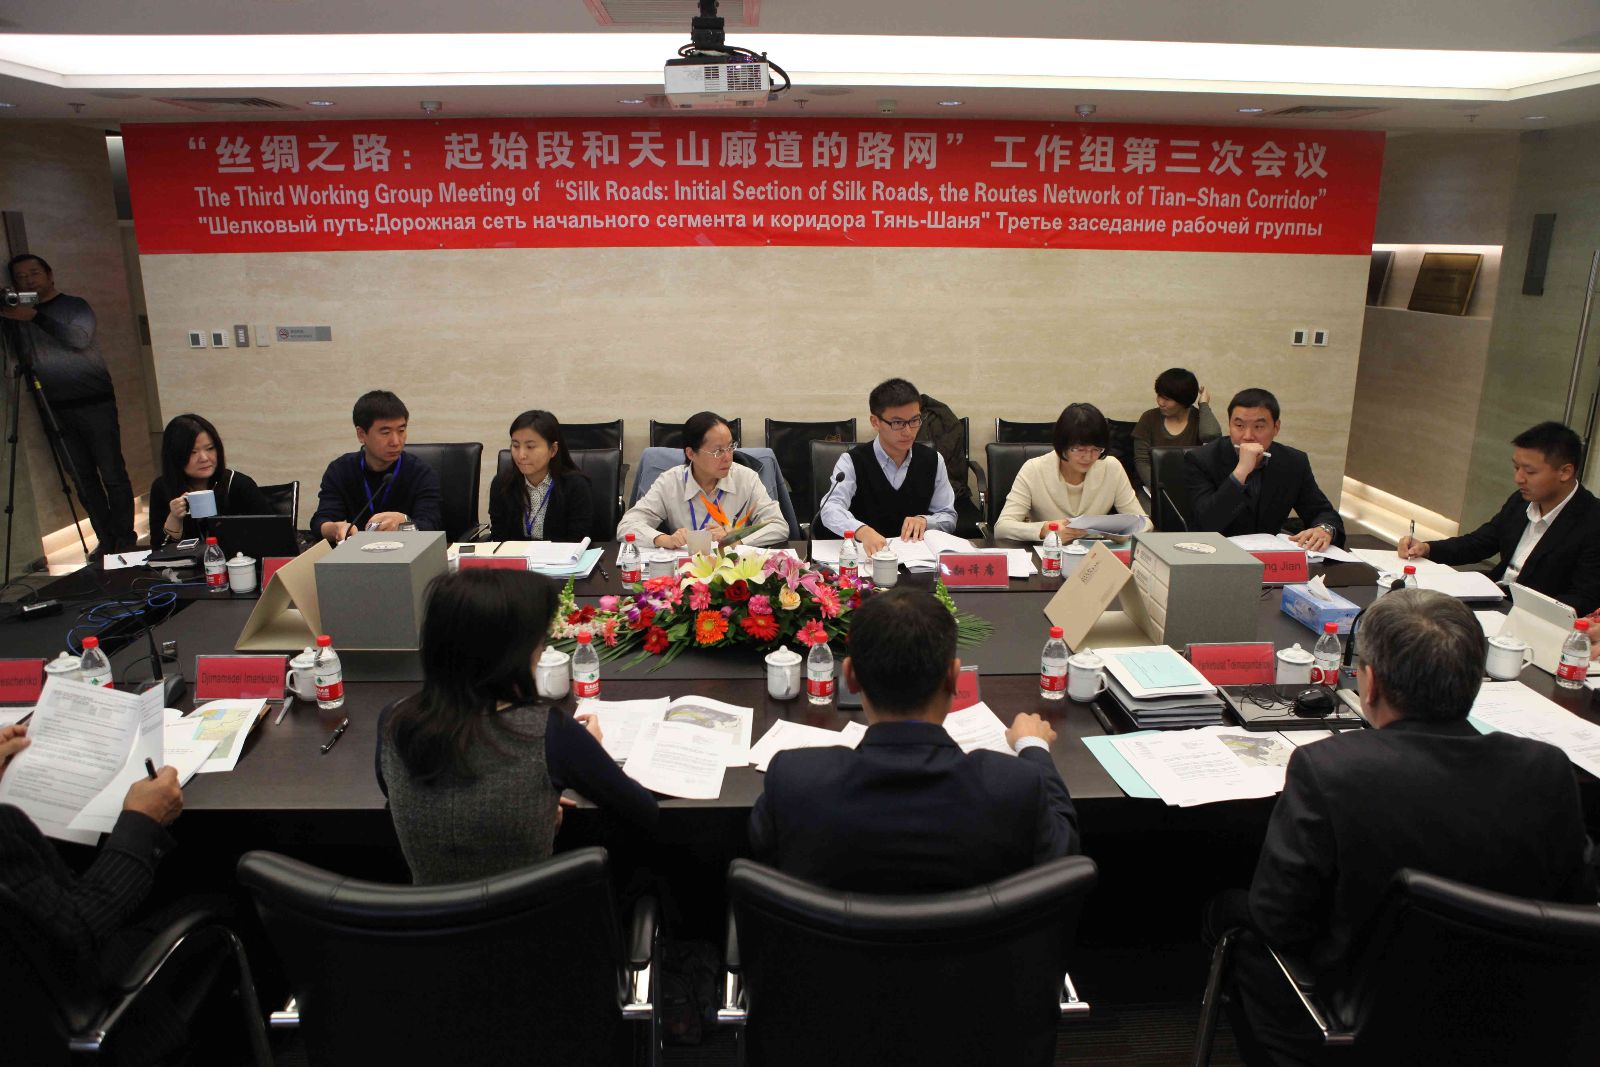 “ 丝绸之路：起始段和天山廊道的路网” 工作组第三次会议在北京召开